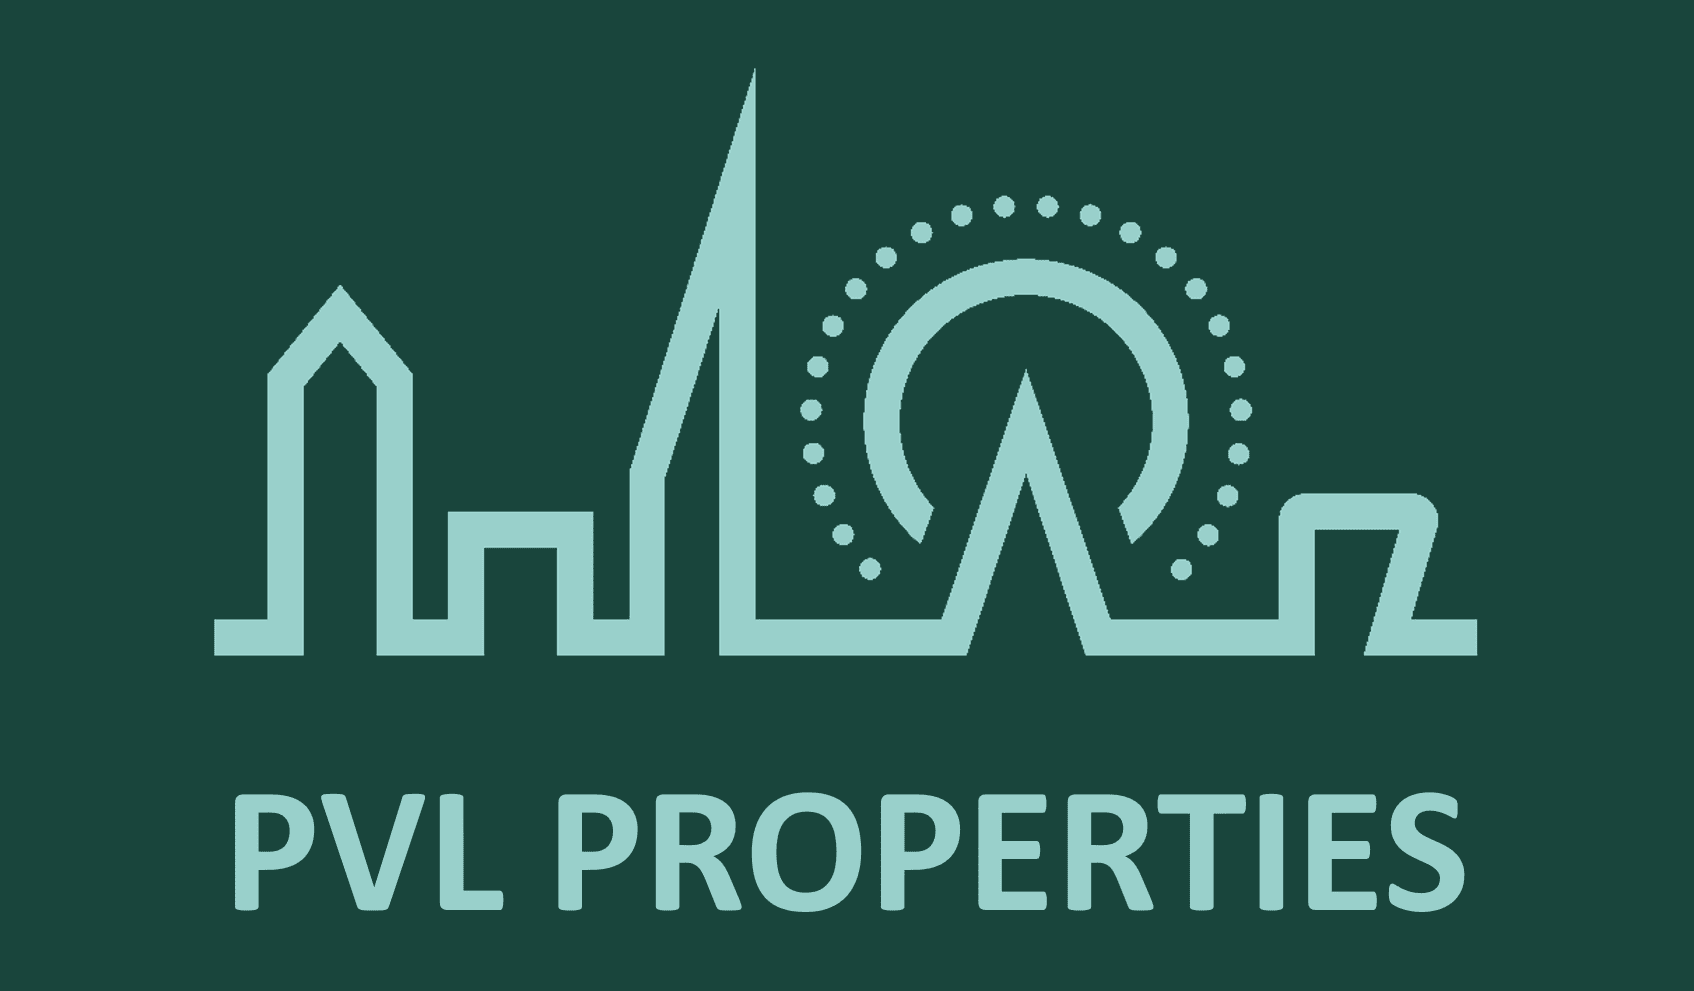 PVL Properties Ltd